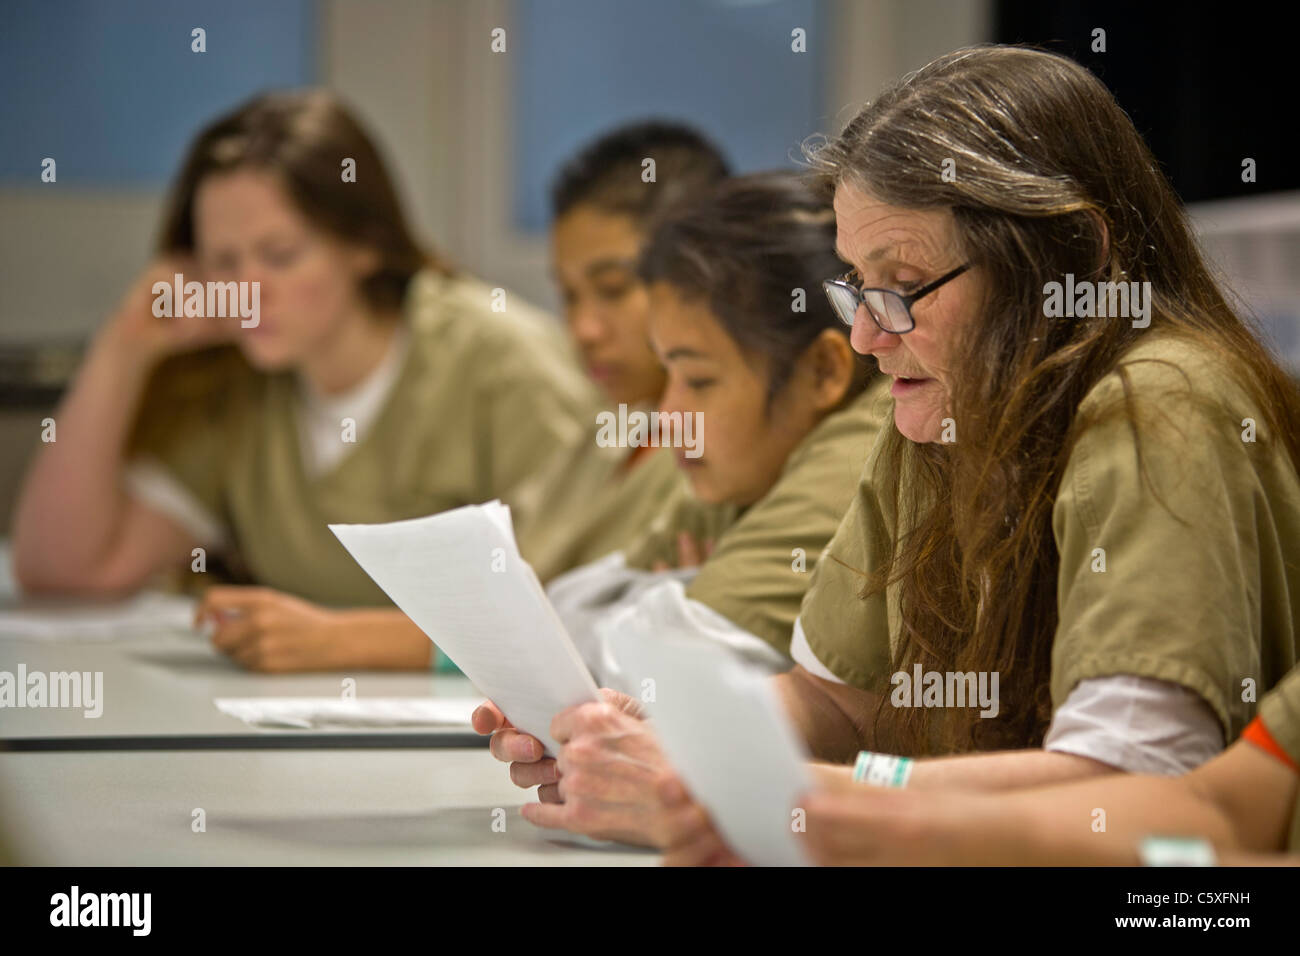 Détenus de la prison des femmes en uniforme participent à un séminaire de traitement de la toxicomanie à Santa Ana, CA. Remarque variété d'âges et de races. Banque D'Images